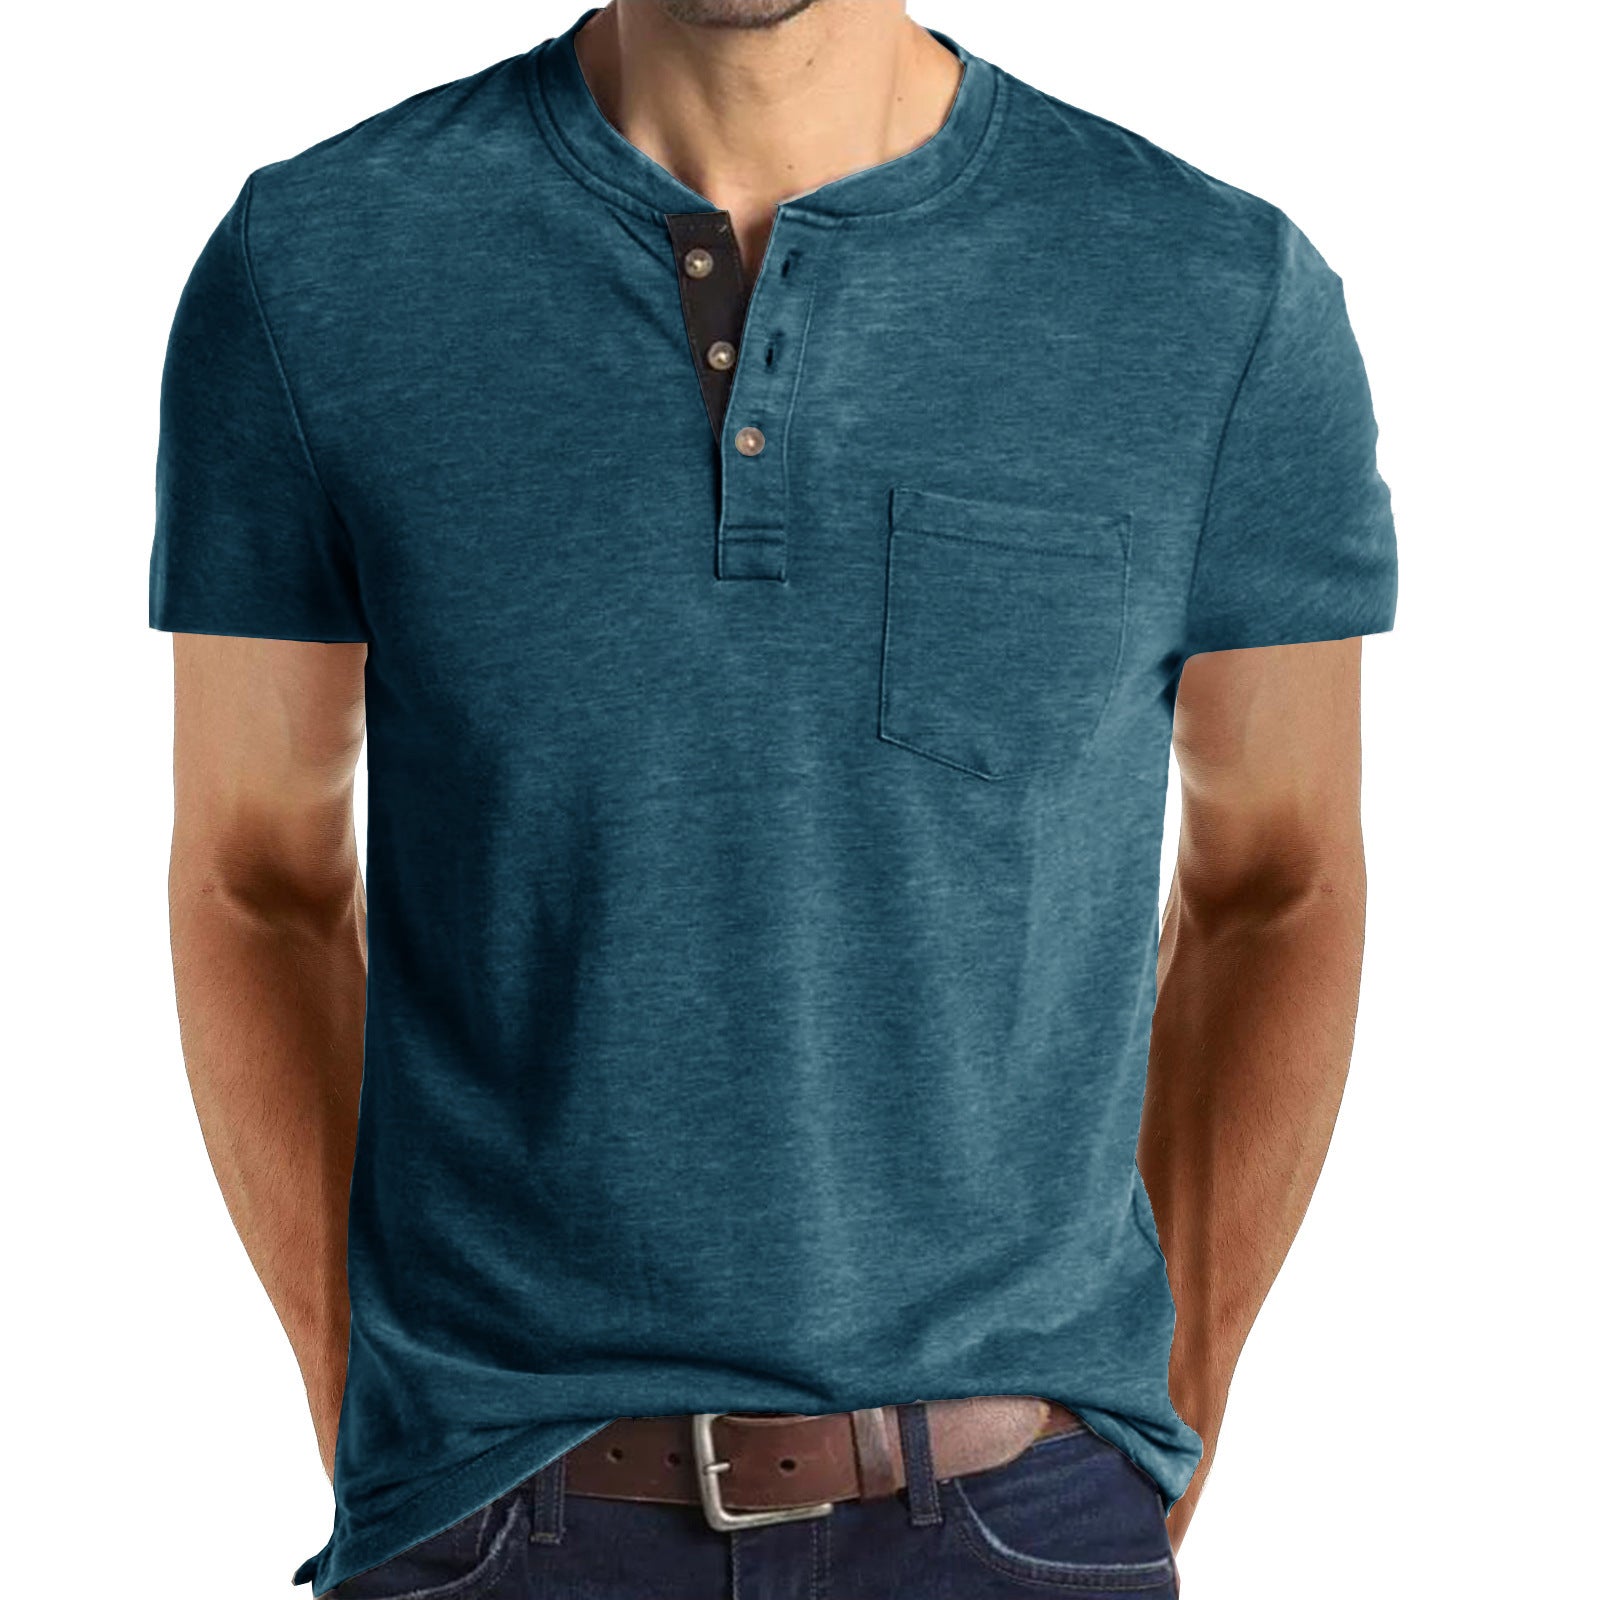 Casual Summer Short Sleeves Men T Shirts-Shirts-Blue-S-Free Shipping at meselling99